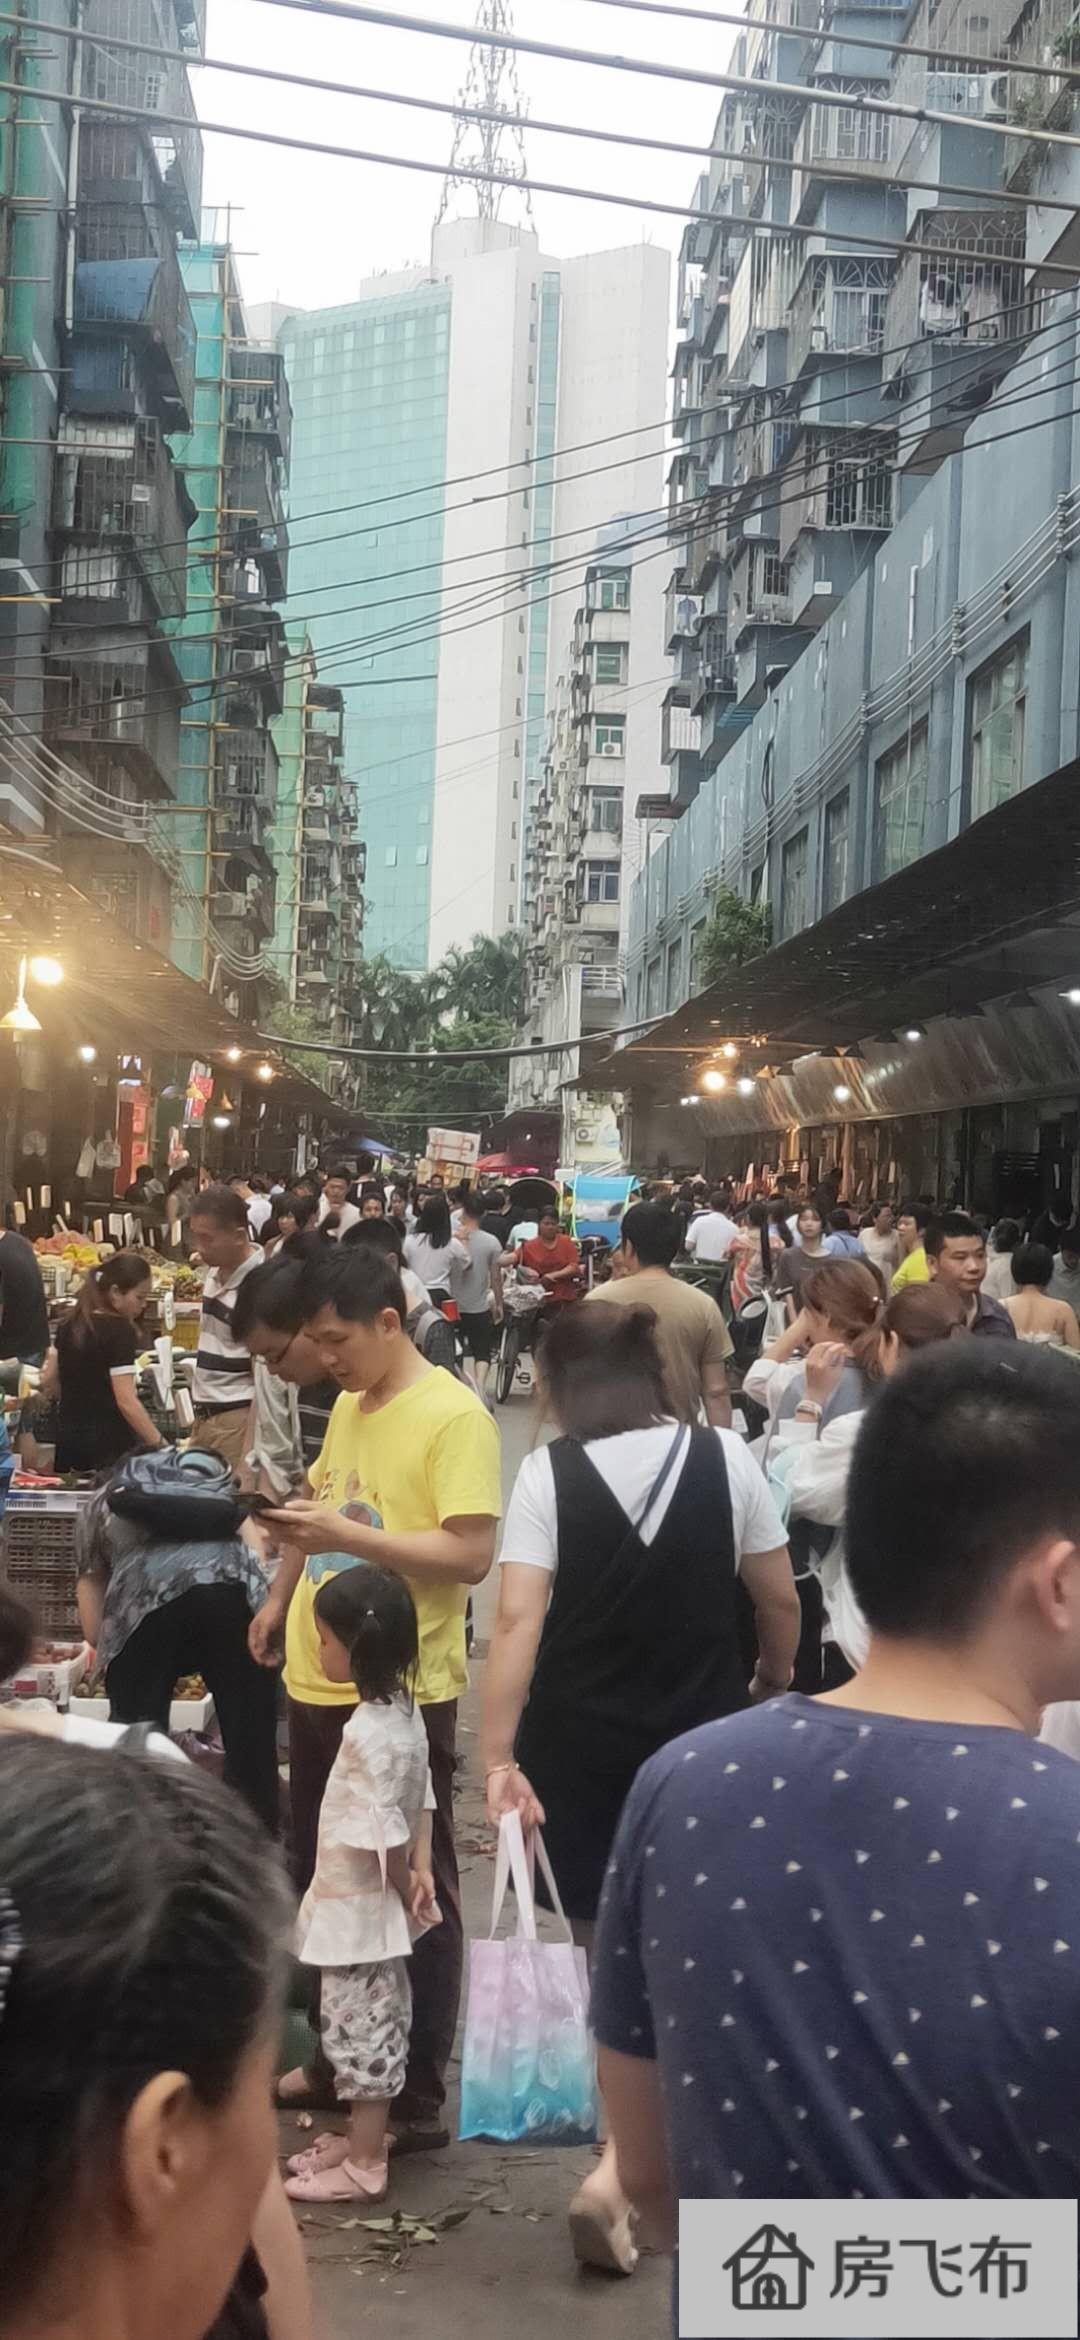 (出租) 龙华新区临街1楼 打造小吃一条街人流火爆 业态不限